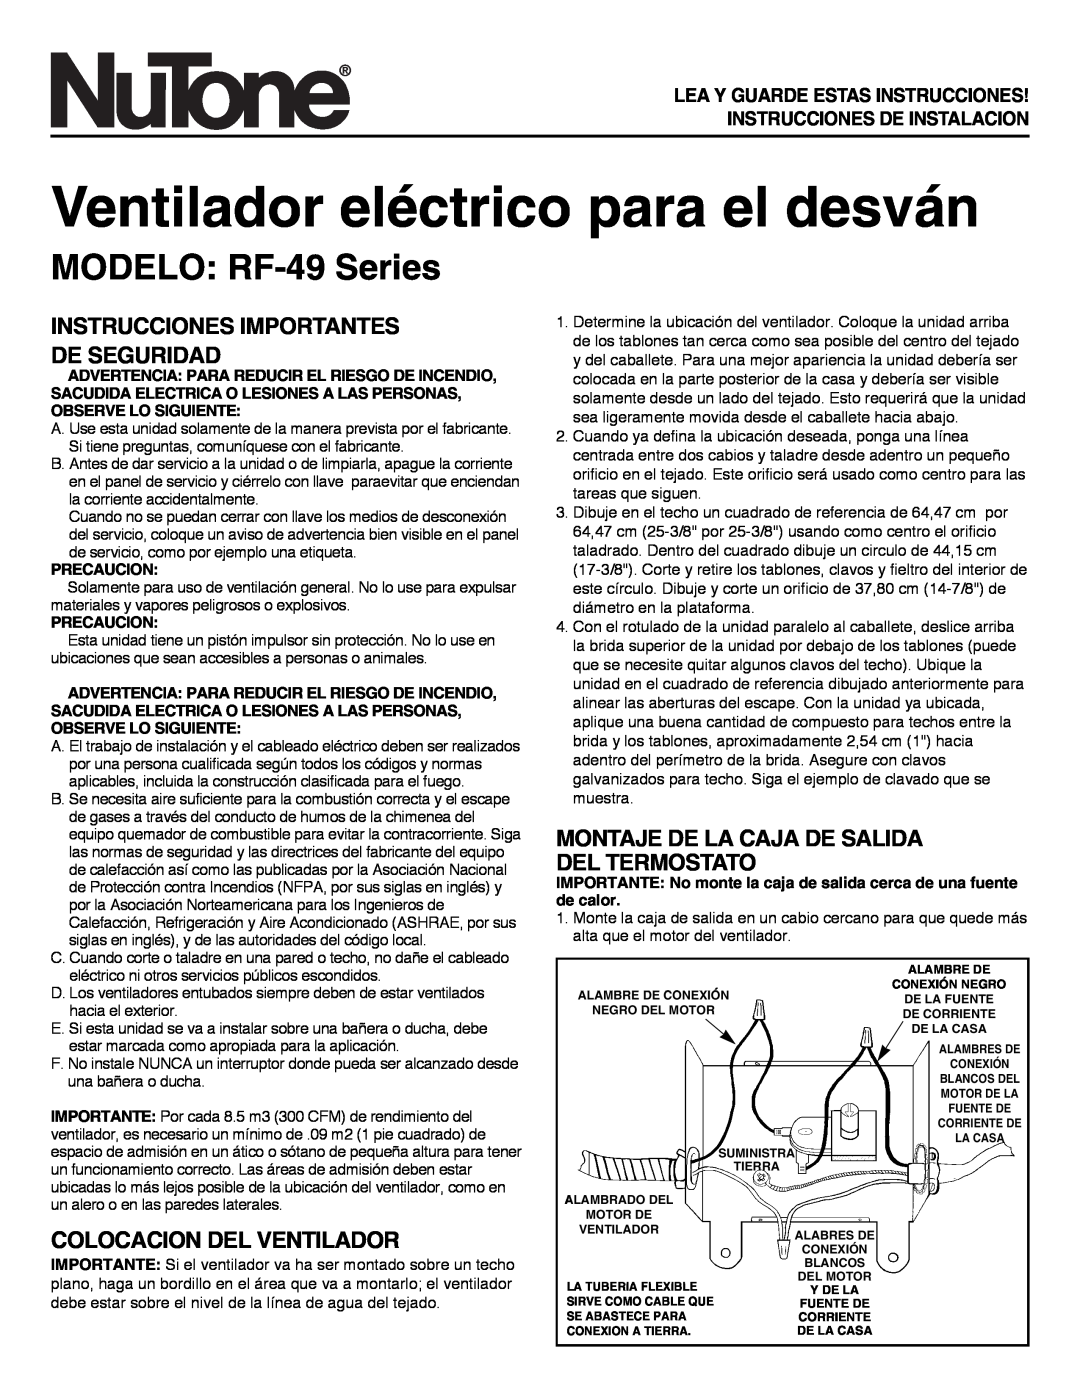 NuTone RF-49 Series Ventilador eléctrico para el desván, MODELO RF-49Series, Instrucciones Importantes De Seguridad 